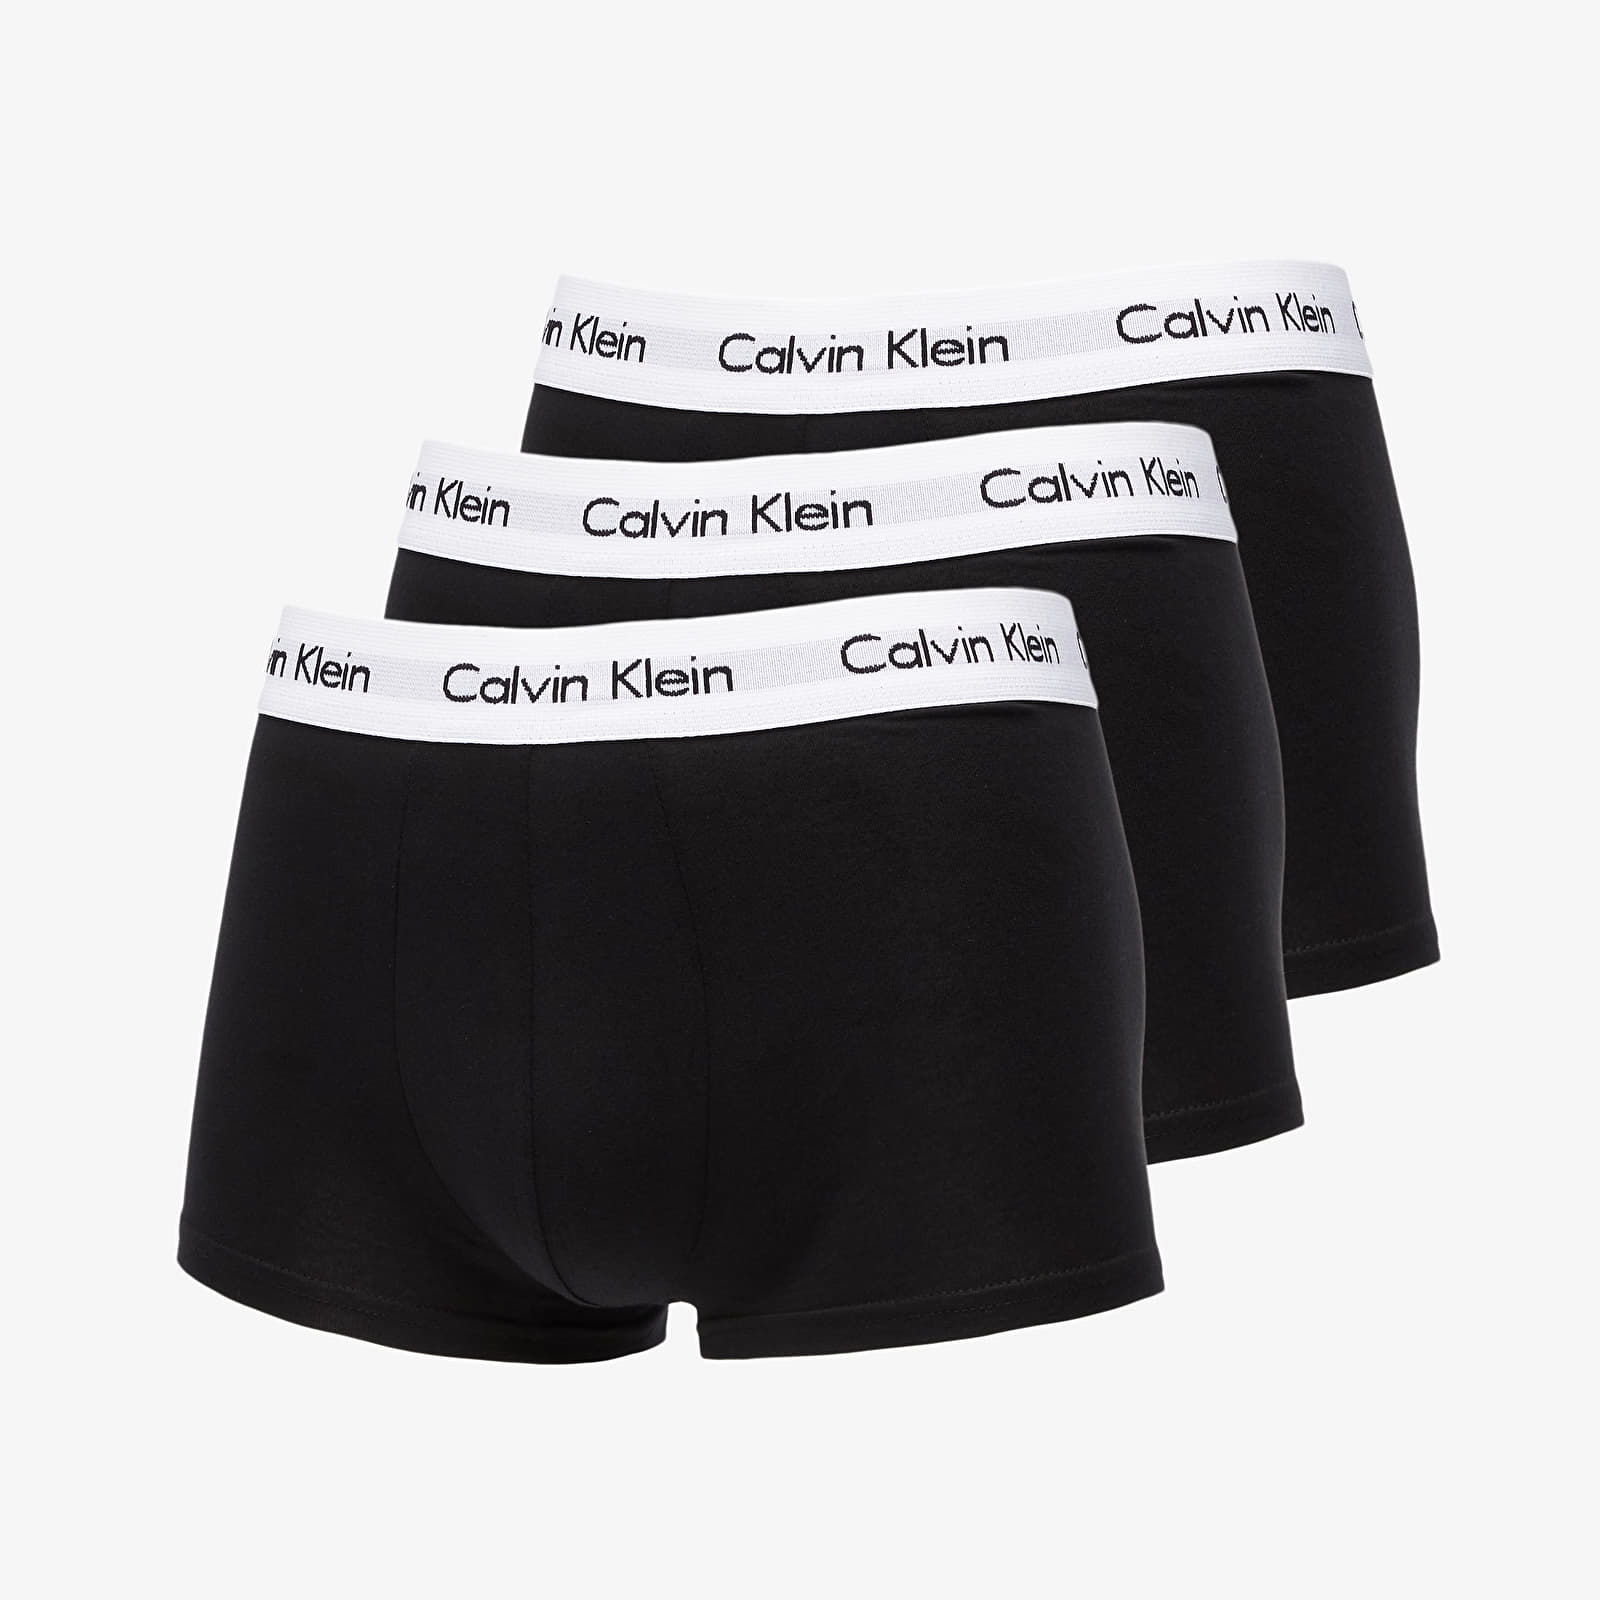 Εσώρουχα trunks Calvin Klein Low Rise Trunks 3 Pack Black